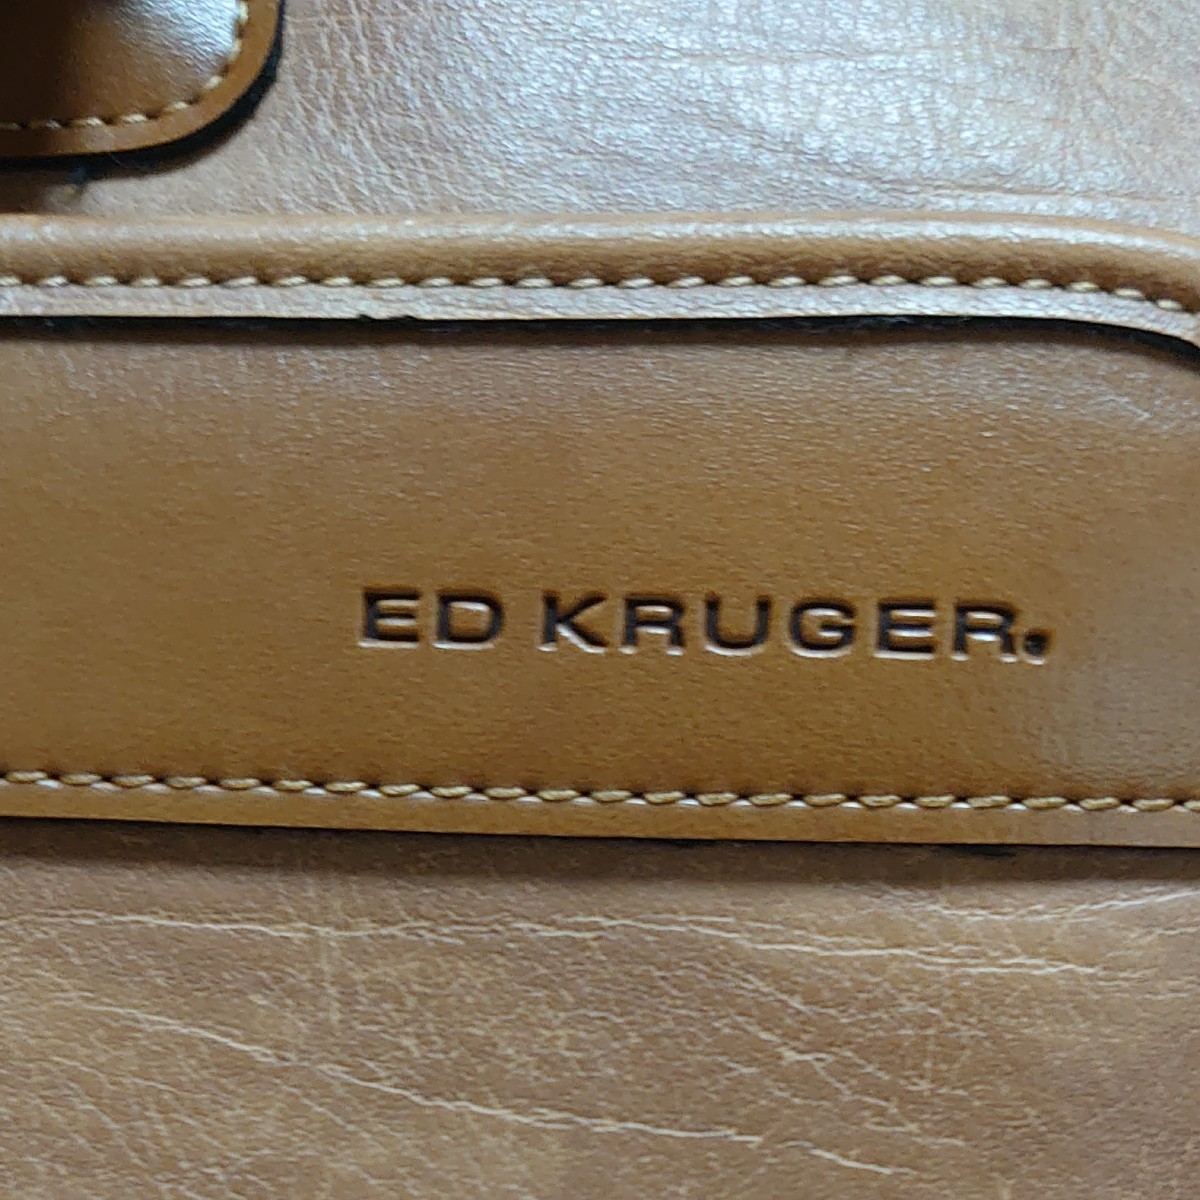 ブリーフケース ビジネスバッグ メンズバッグ かばん 鞄 エドクルーガー ED KRUGER